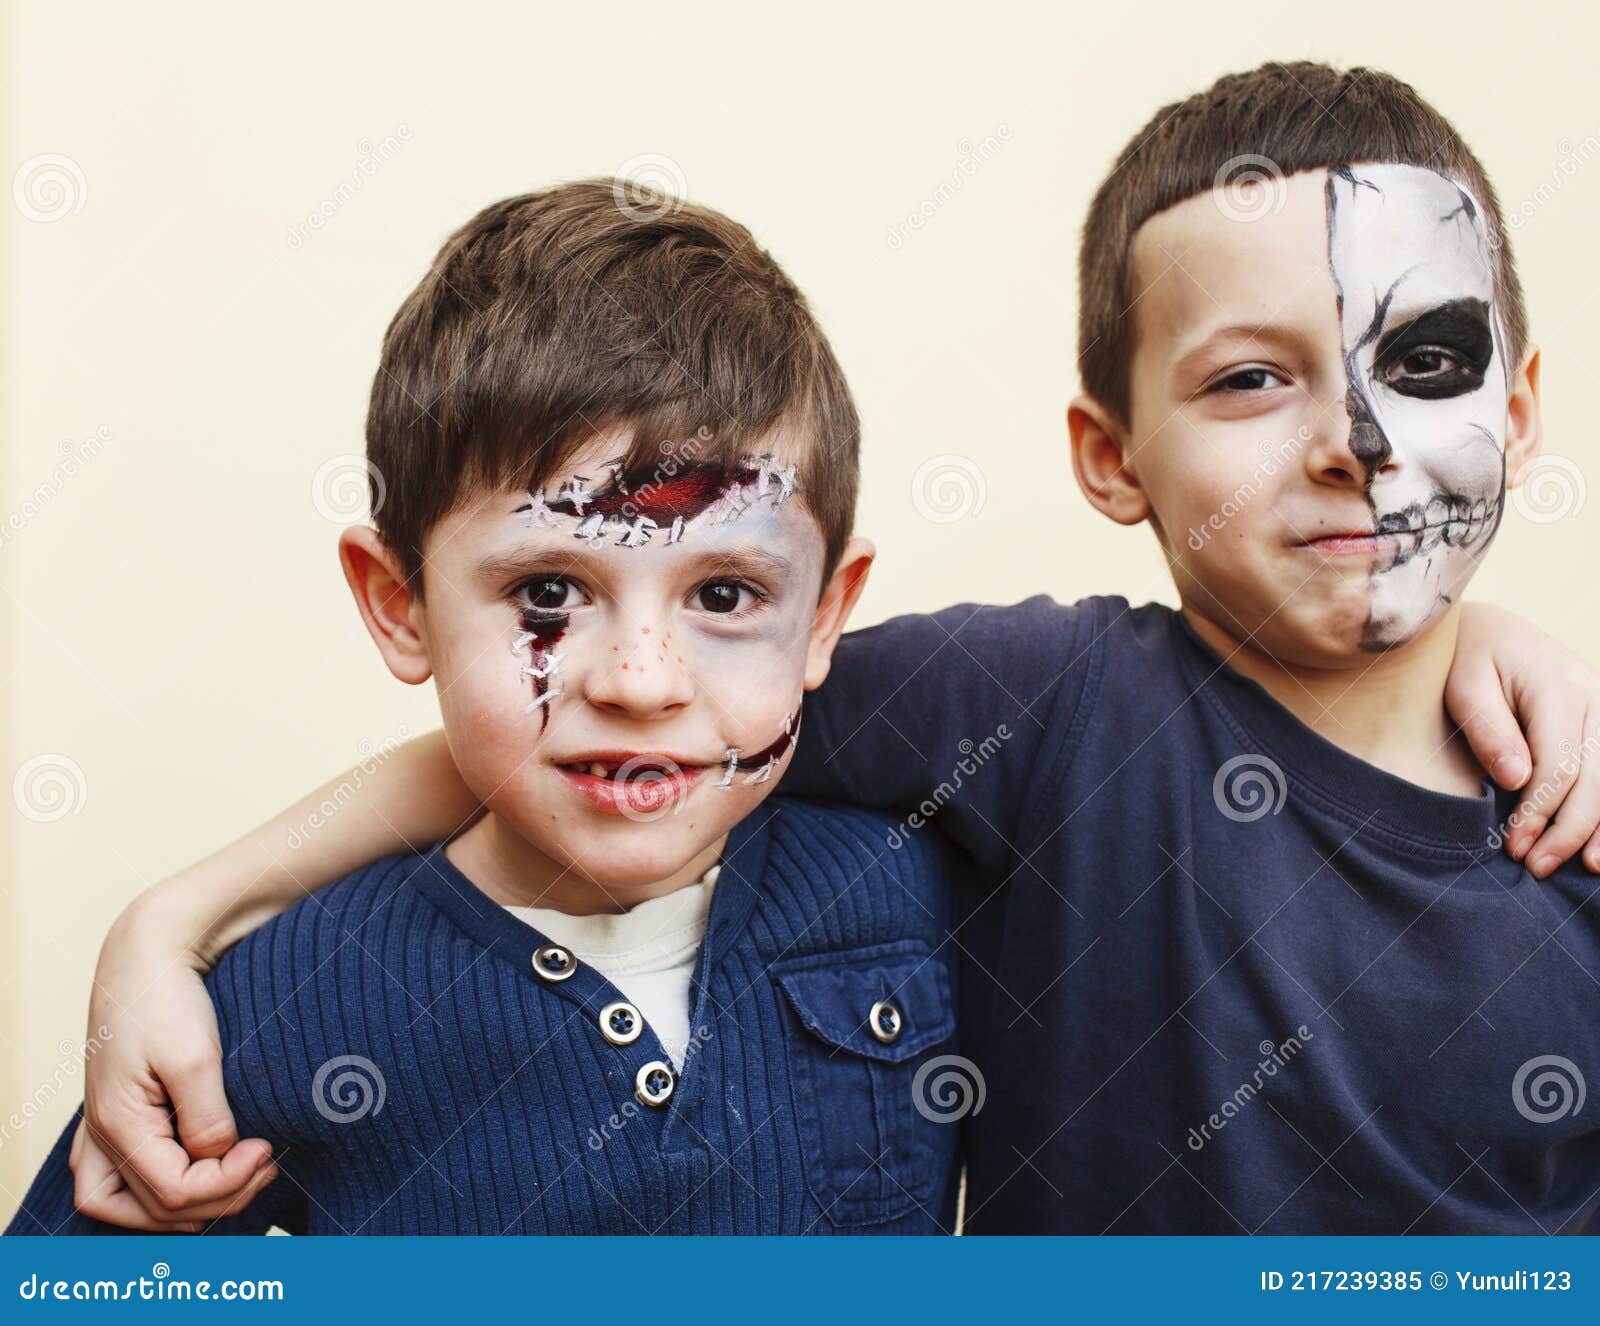 Verdachte uitzending Begrafenis Zombie Apocalypse Kinderen Concept. Verjaardagsfeest Facepaint Op Kinderen  Scar Face Skelet Samen Met Plezier Stock Afbeelding - Image of kind,  halloween: 217239385